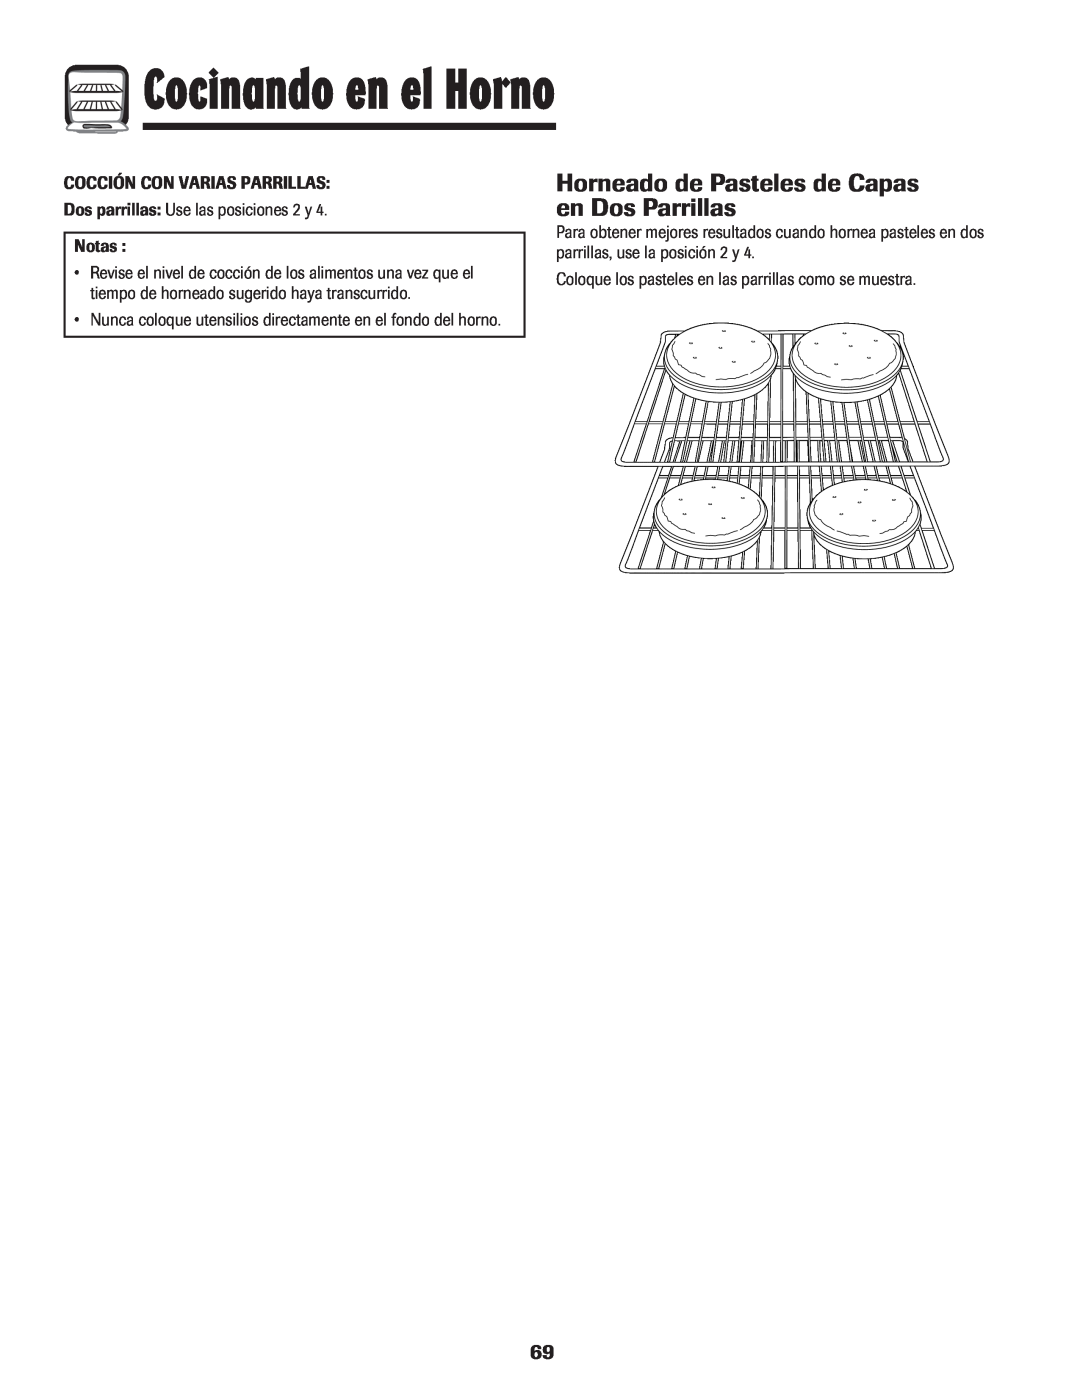 Magic Chef 500 important safety instructions Horneado de Pasteles de Capas en Dos Parrillas, Cocinando en el Horno 